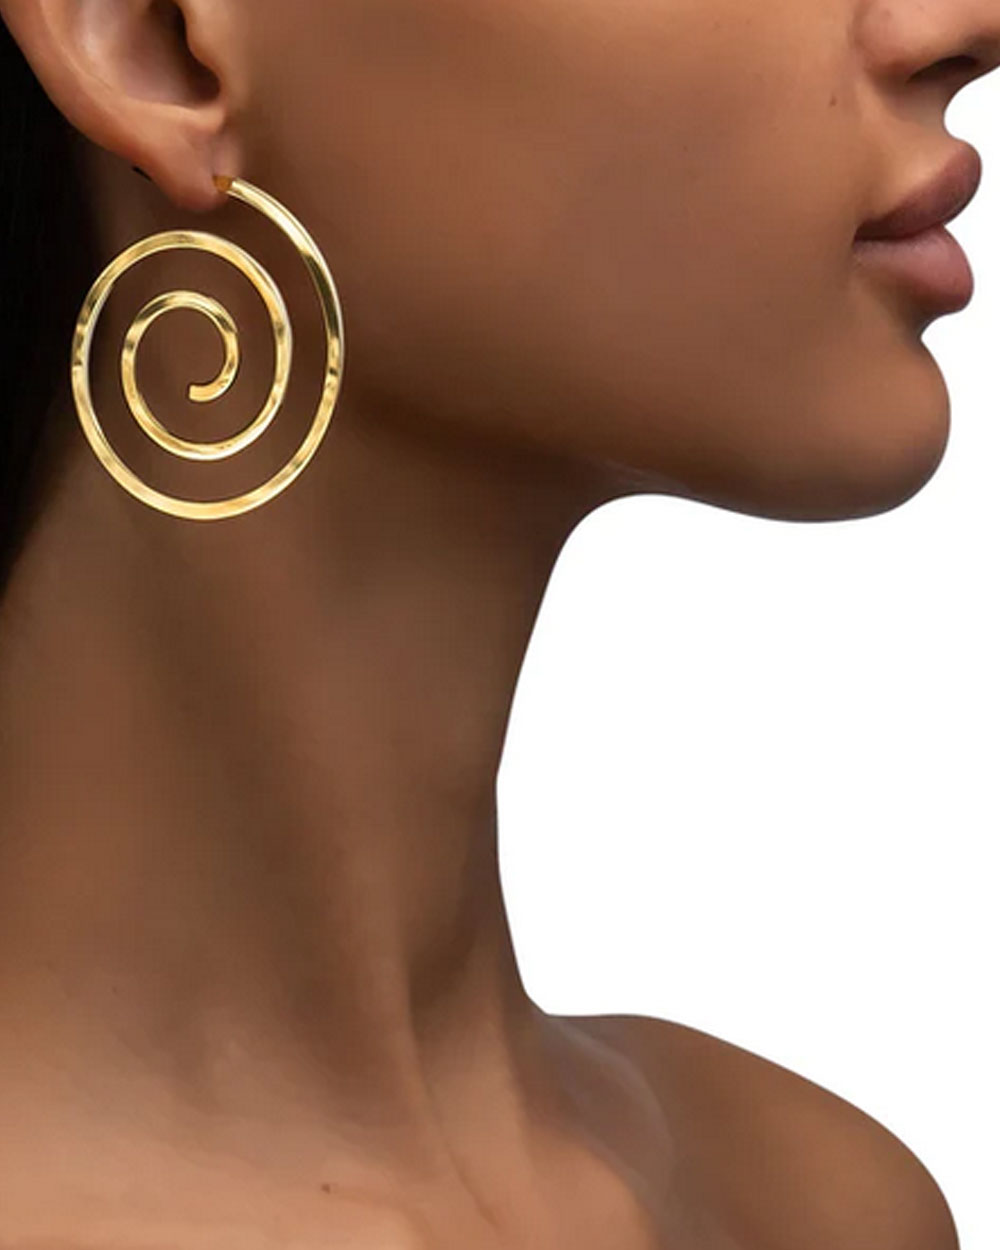 Essence Spiral Cone Hoop Earrings